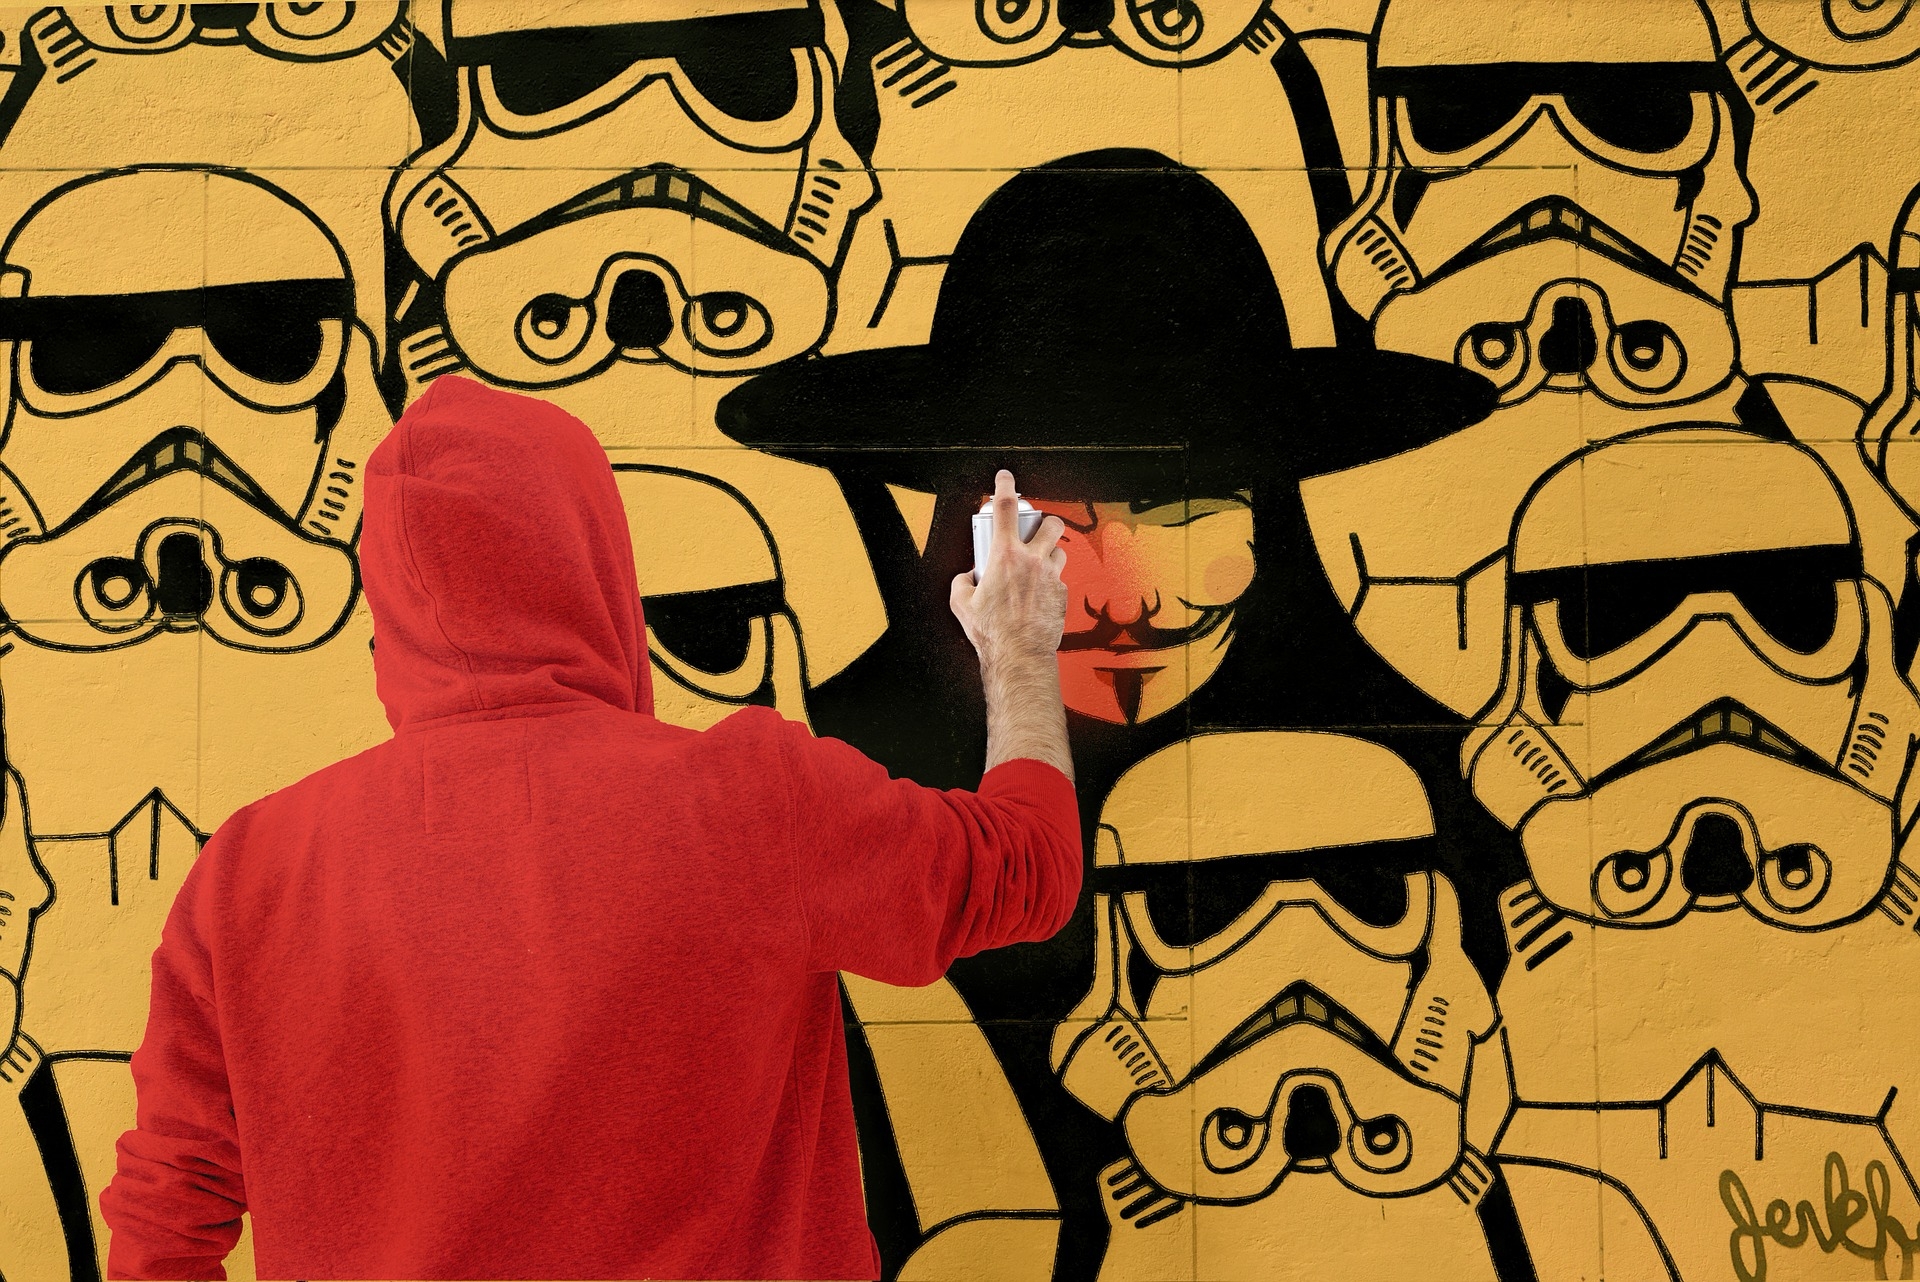 utca-graffiti-art-spray-hacker